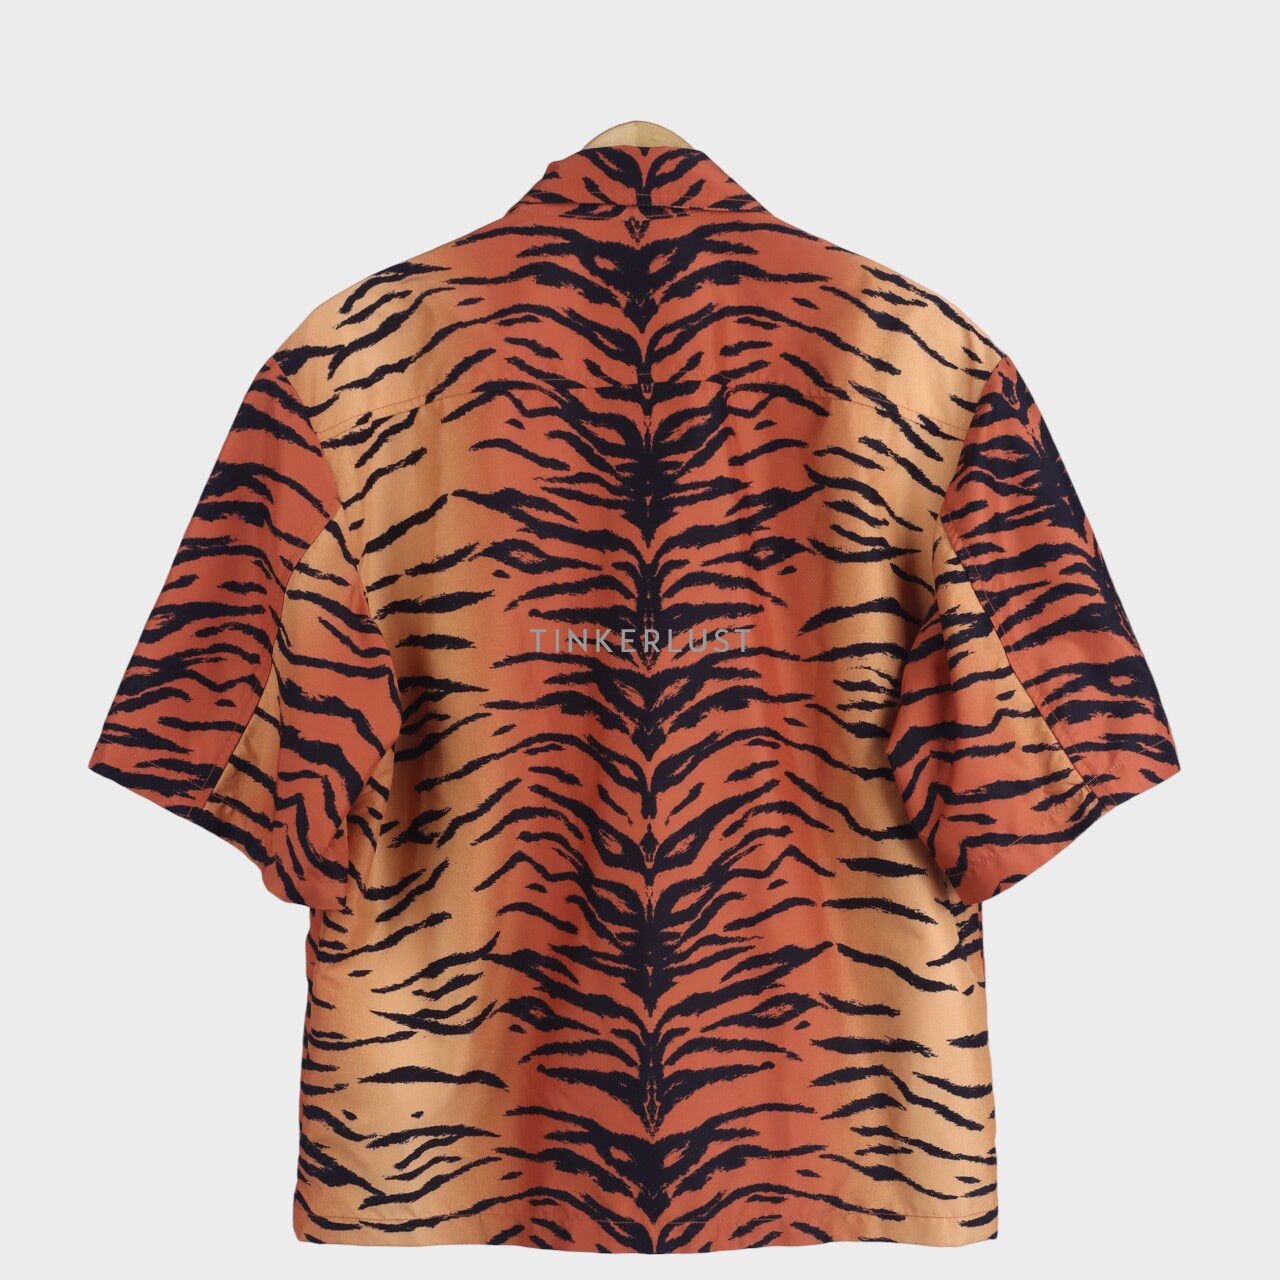 Onitsuka Tiger Black & Orange Animal Print Jacket